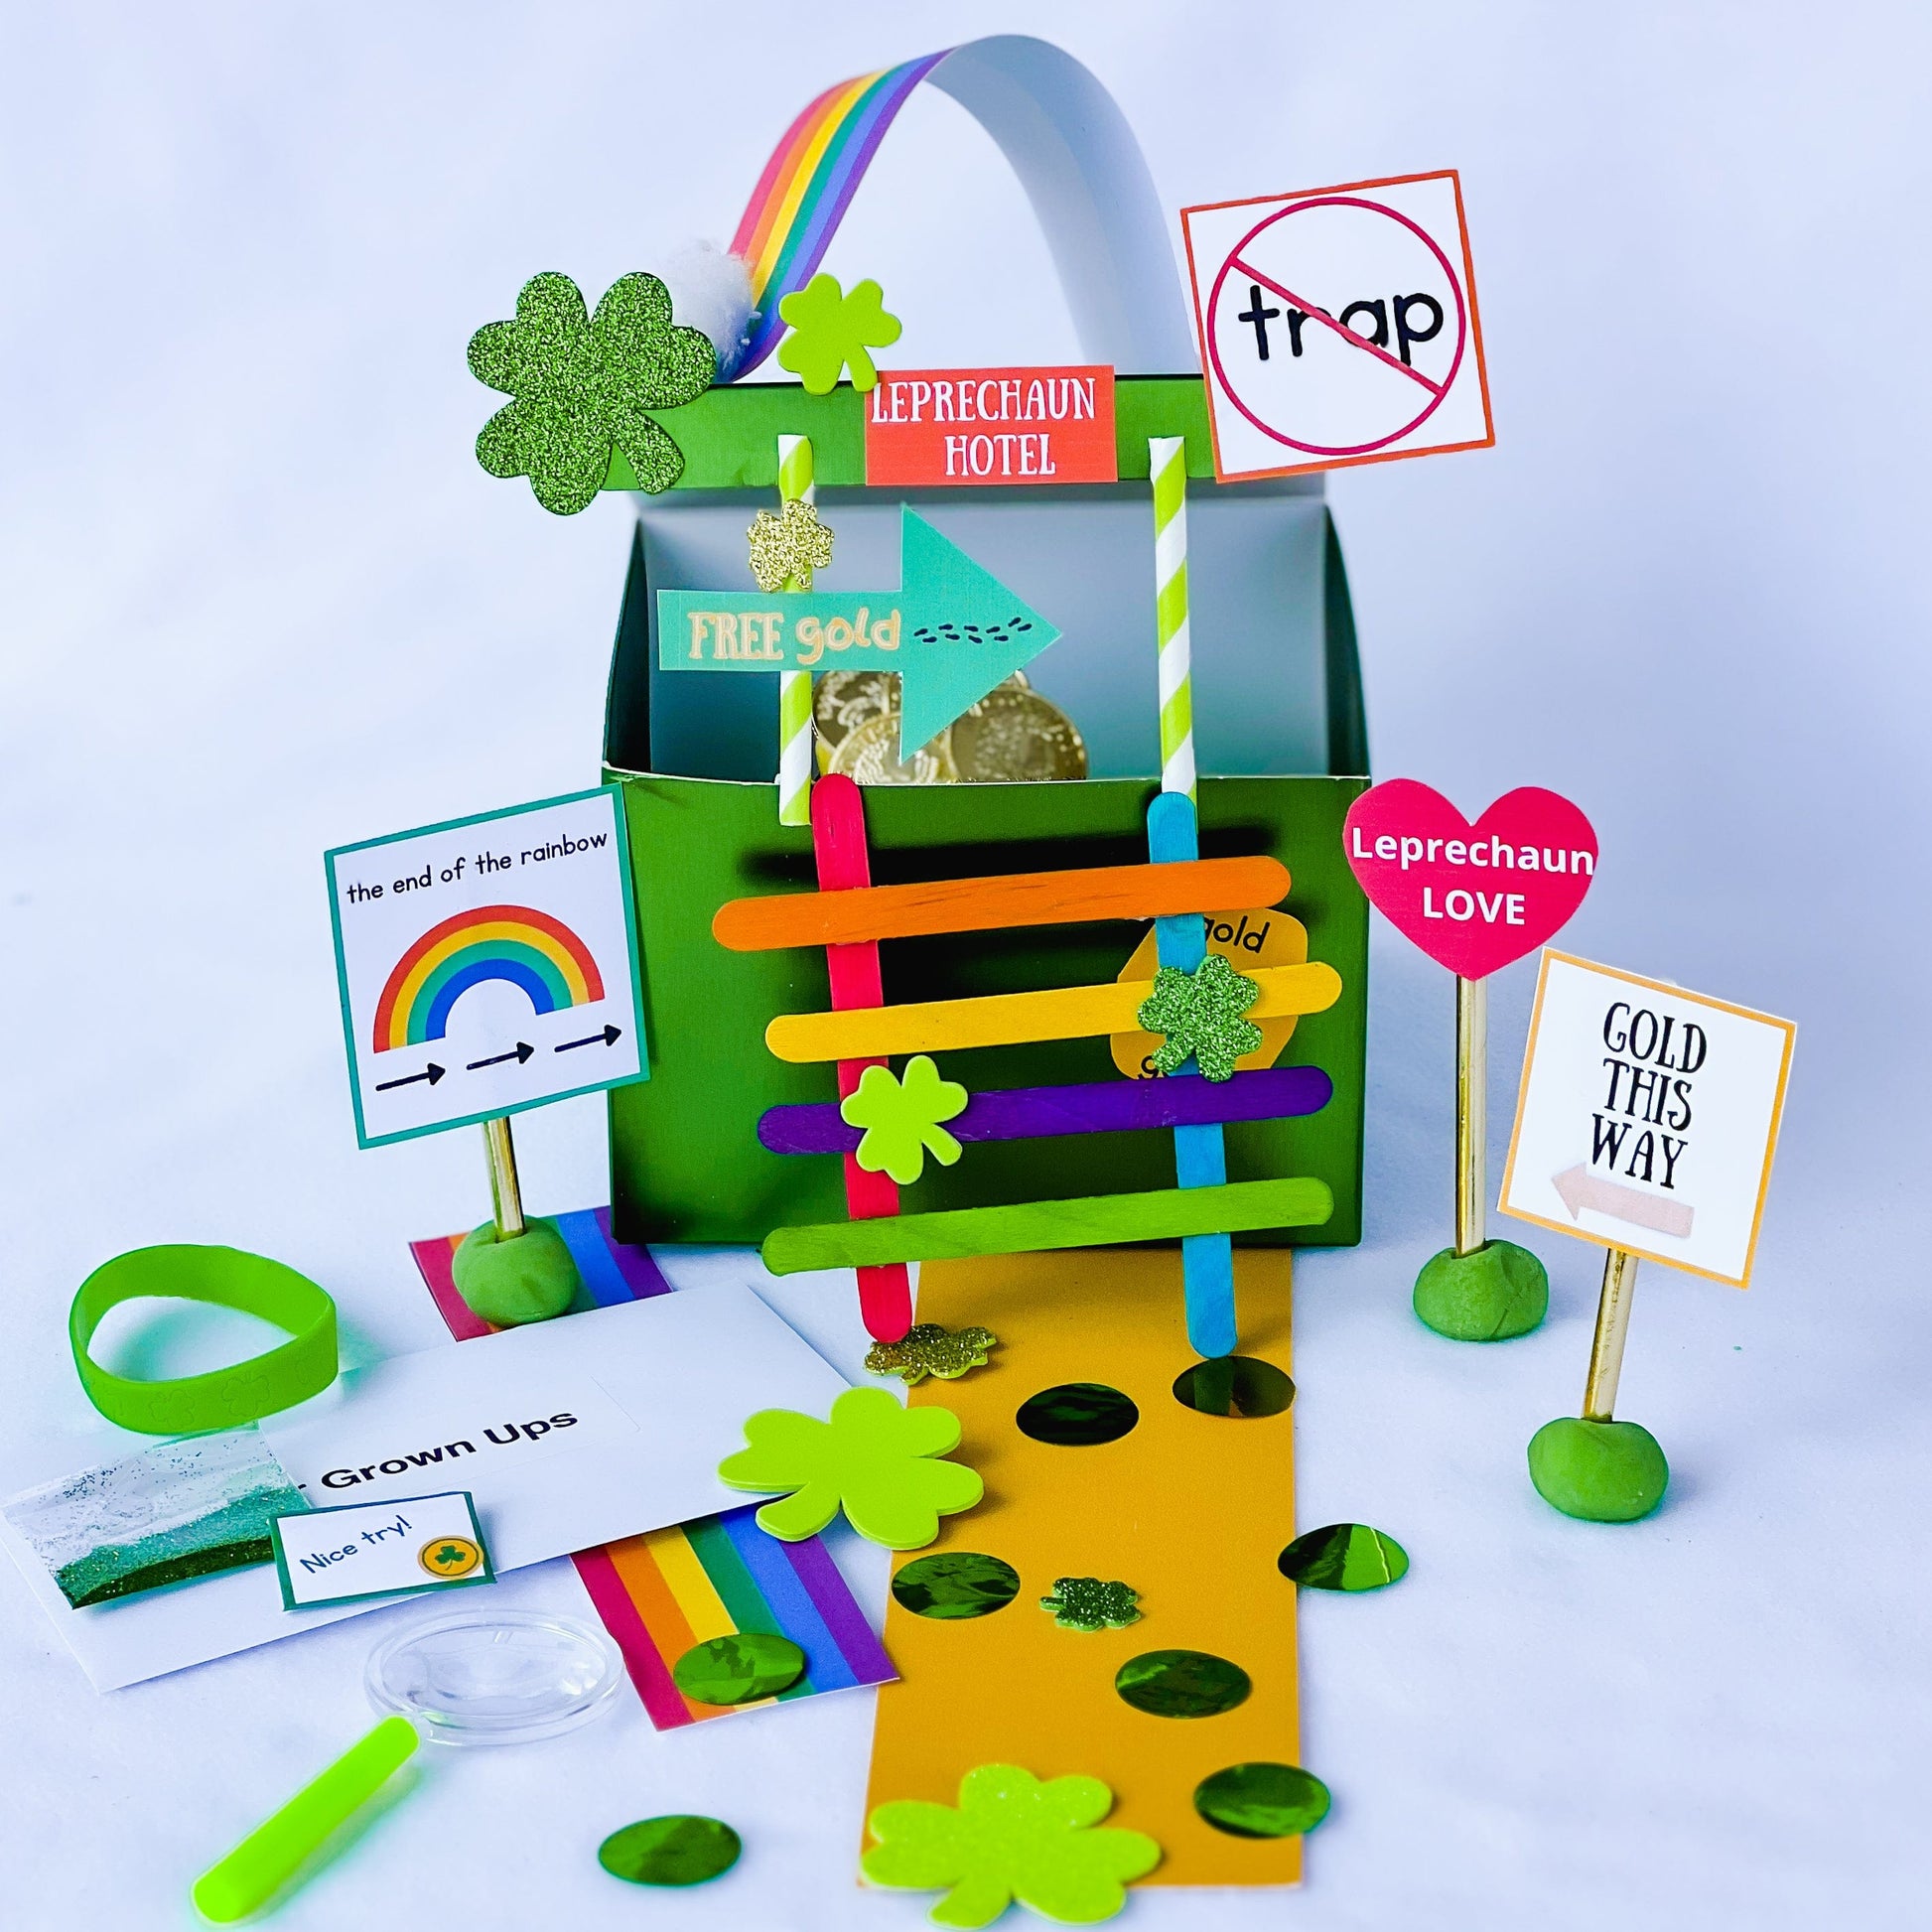 St Patricks Day Leprechaun Trap Craft Kit DIY Craft Kit for Kids 